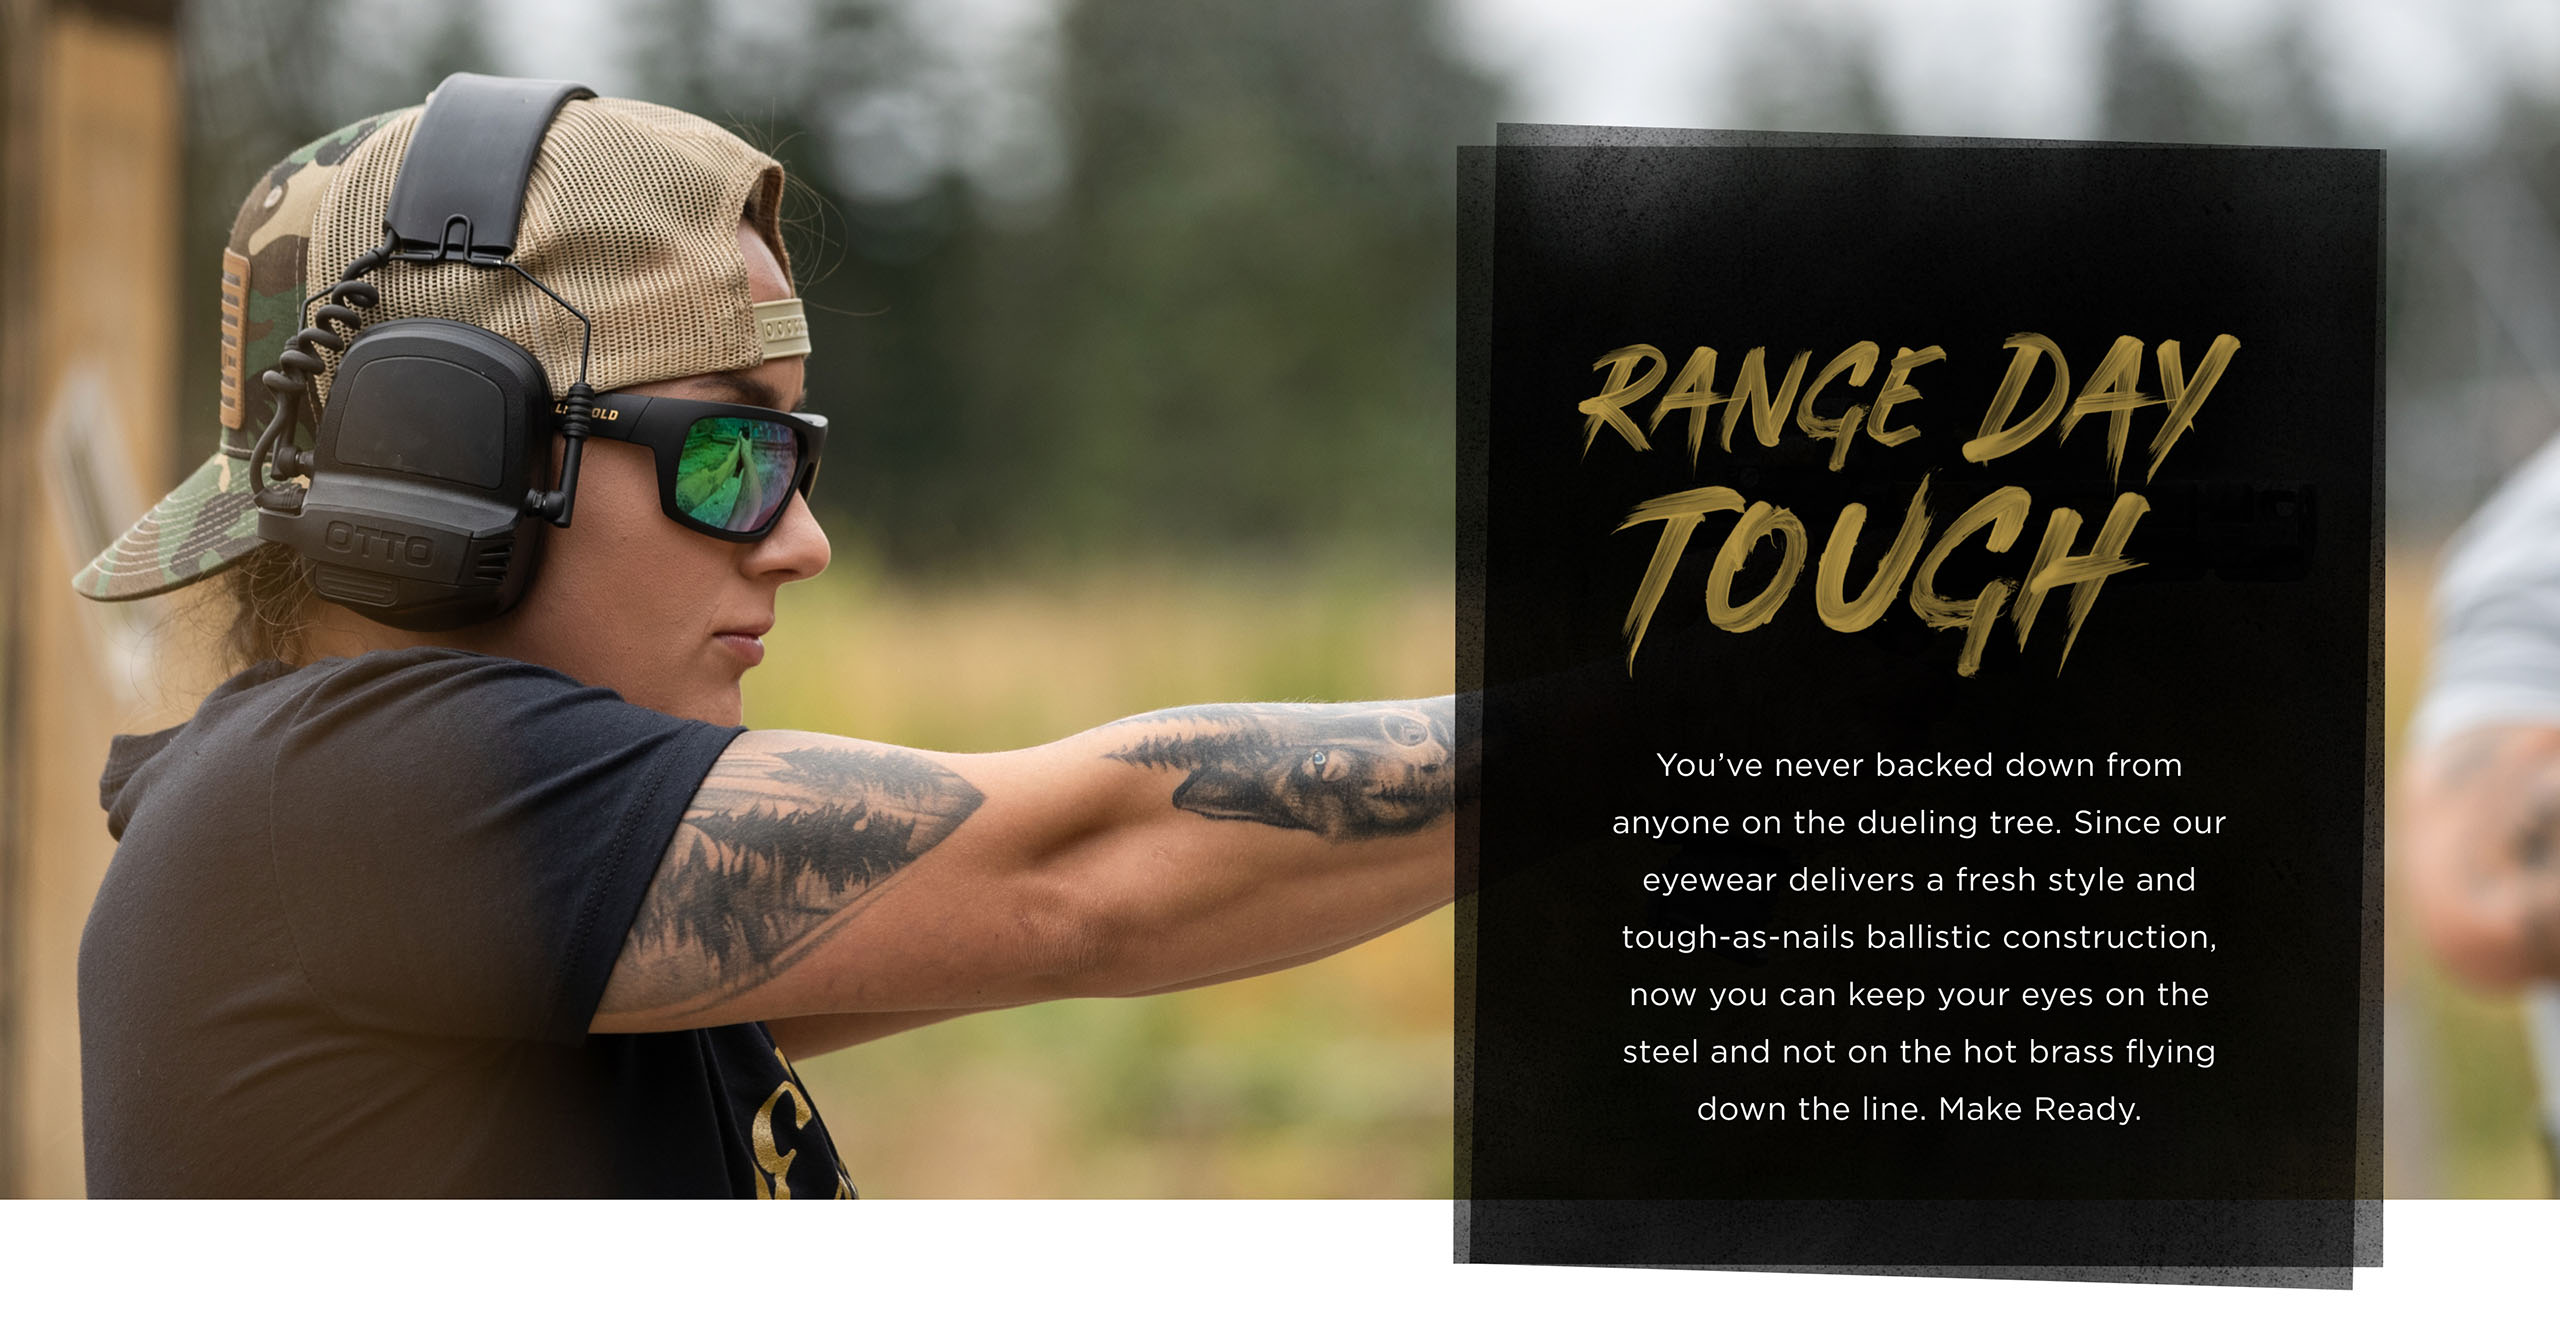 Range Day Tough - Women wearing leupold performance eyewear shooting a pistol at the range